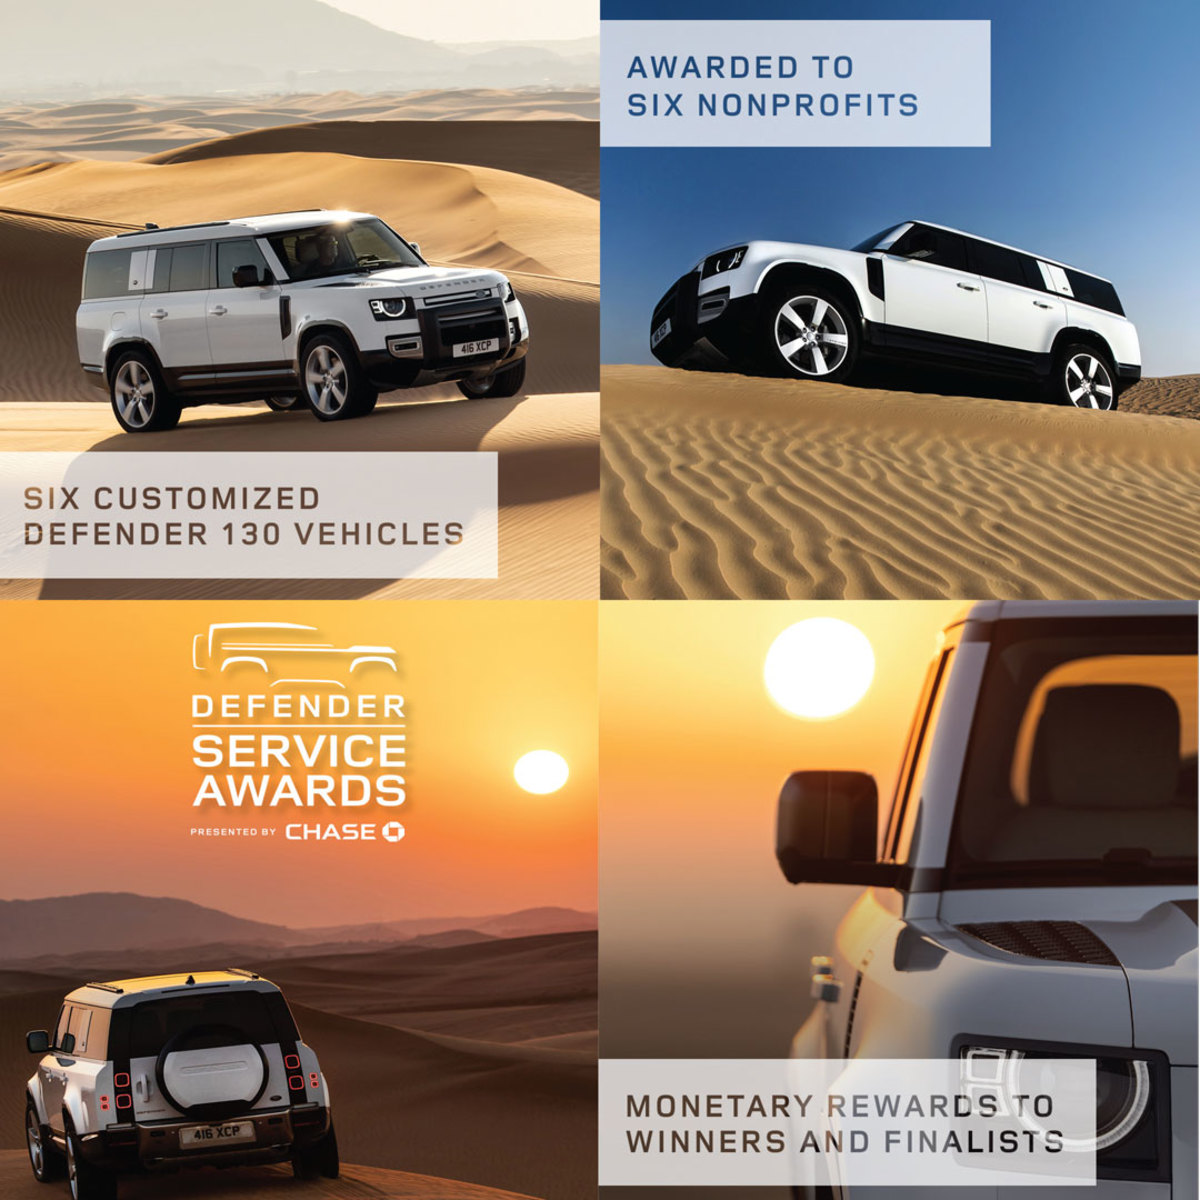 Aniversário da Land Rover celebrado nas alturas - Creative News